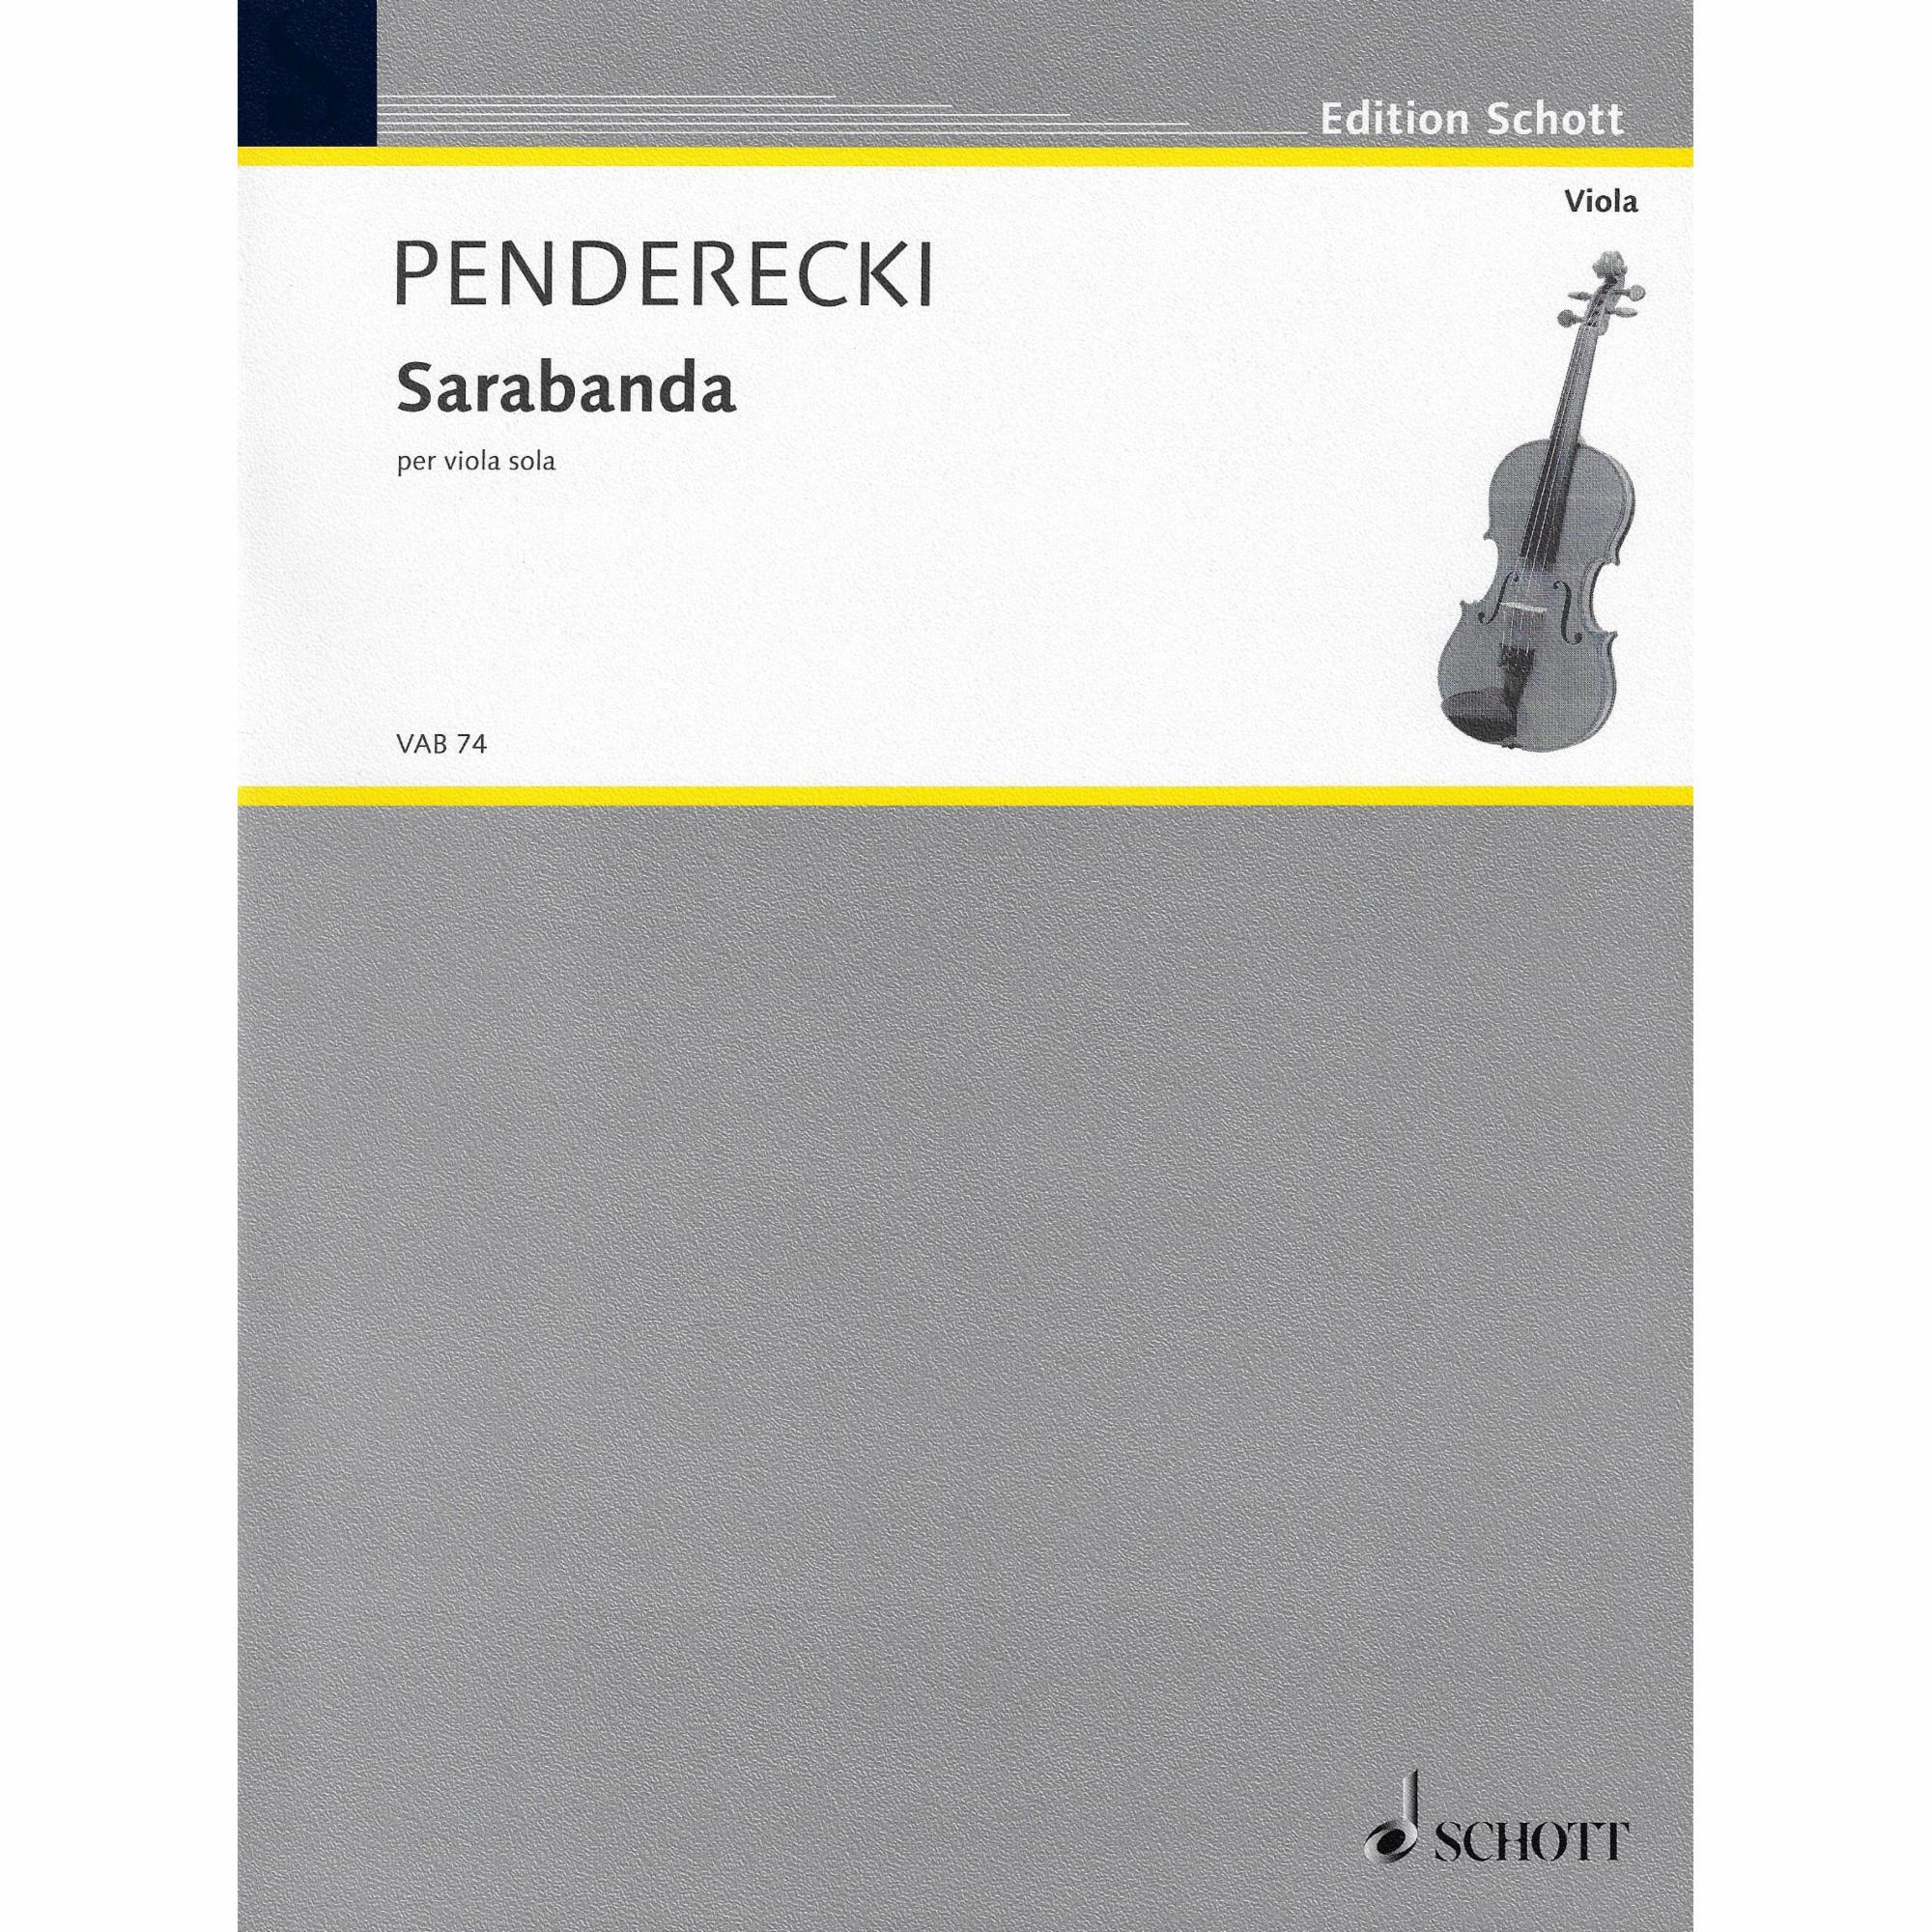 Penderecki -- Sarabanda for Solo Viola